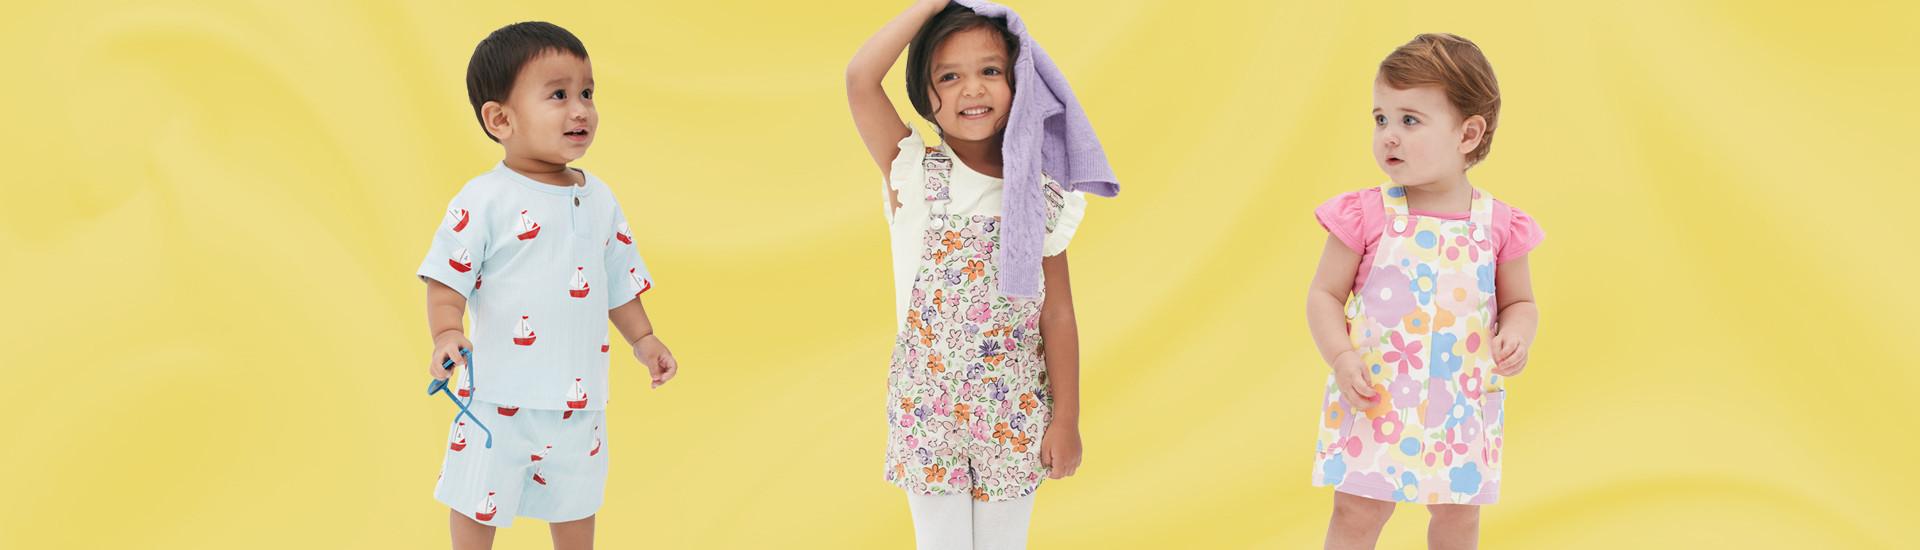 Îmbrăcăminte pentru copii cu culori intense